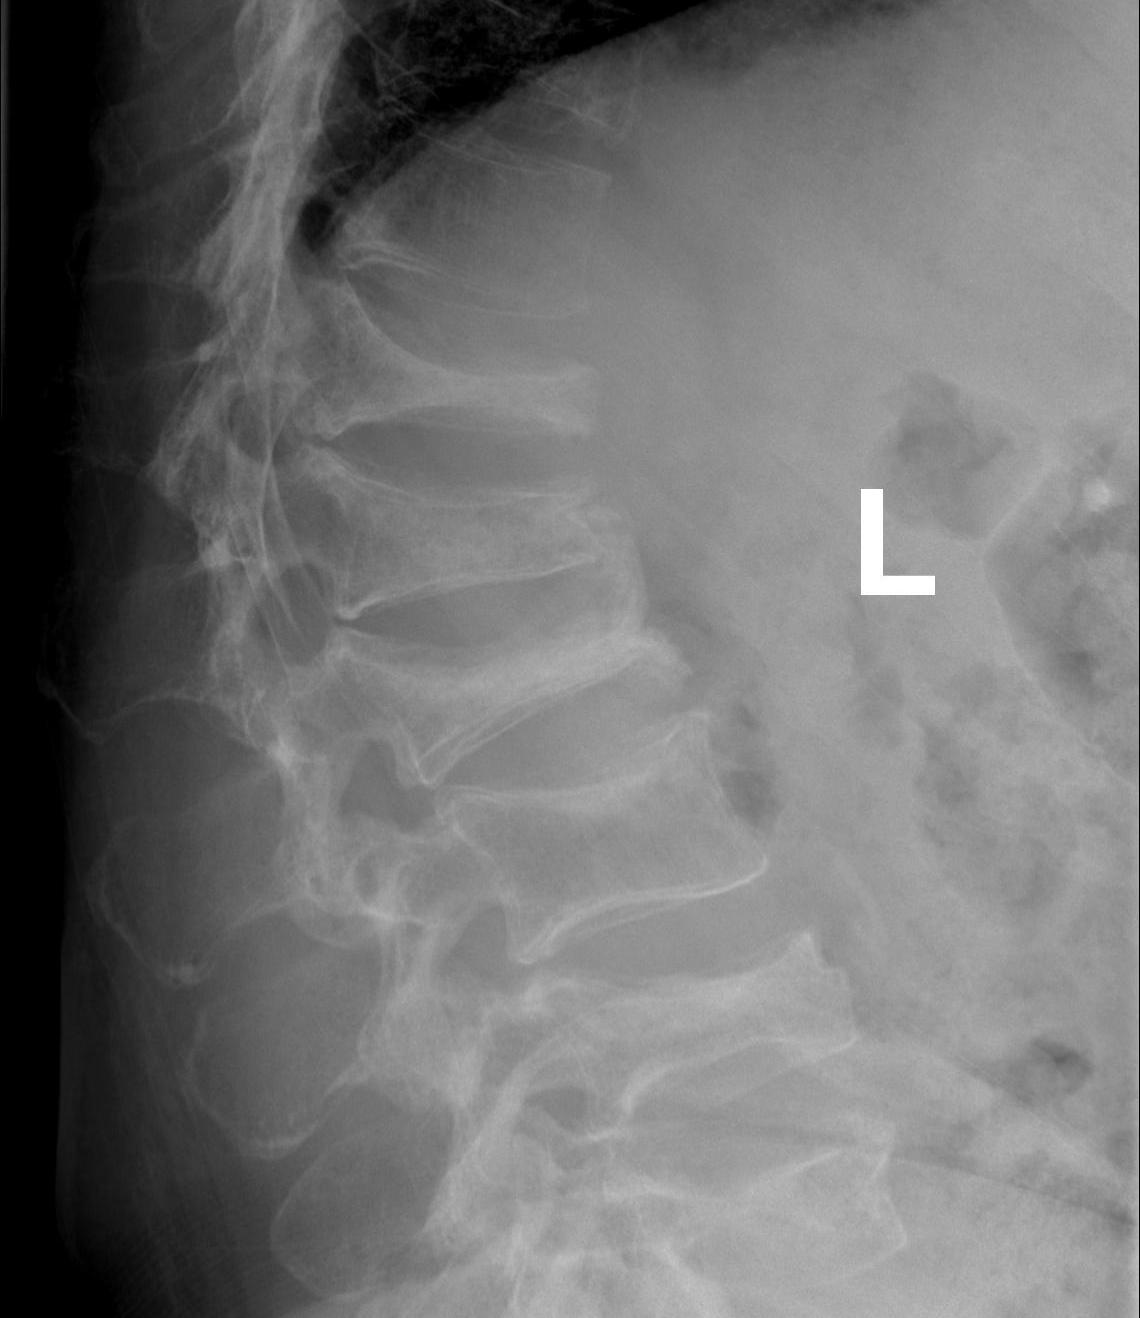 Spine Multiple Myeloma